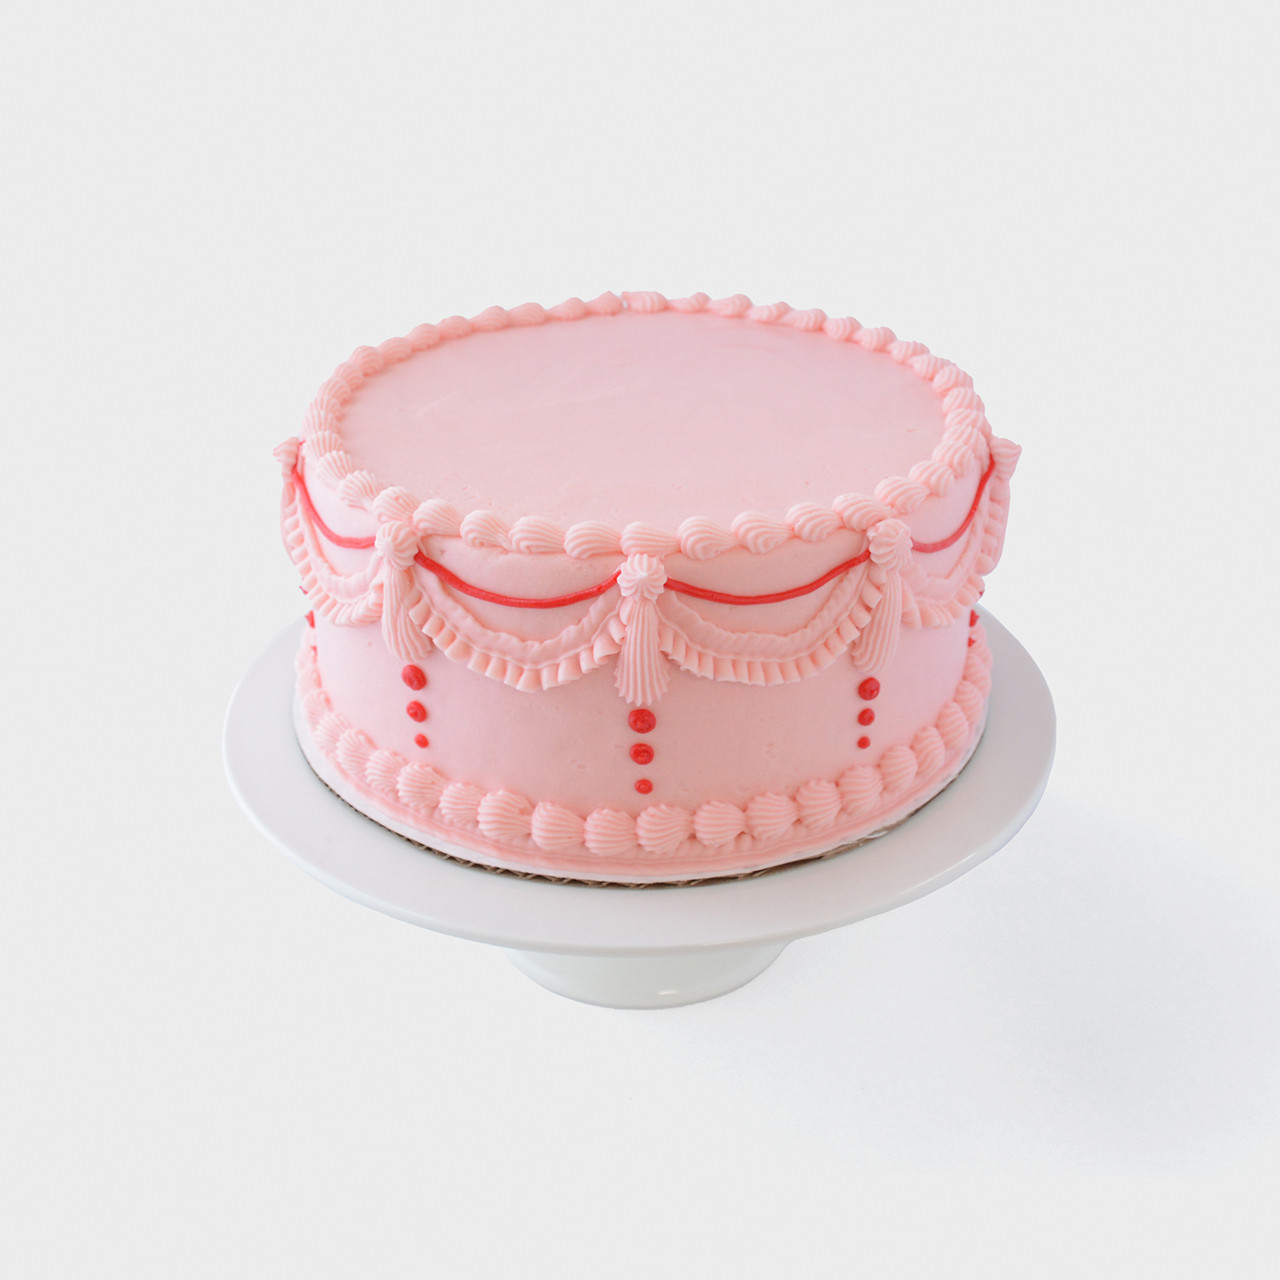 Vintage Birthday cake | Vintage birthday cakes, Small birthday cakes, Mini  cakes birthday